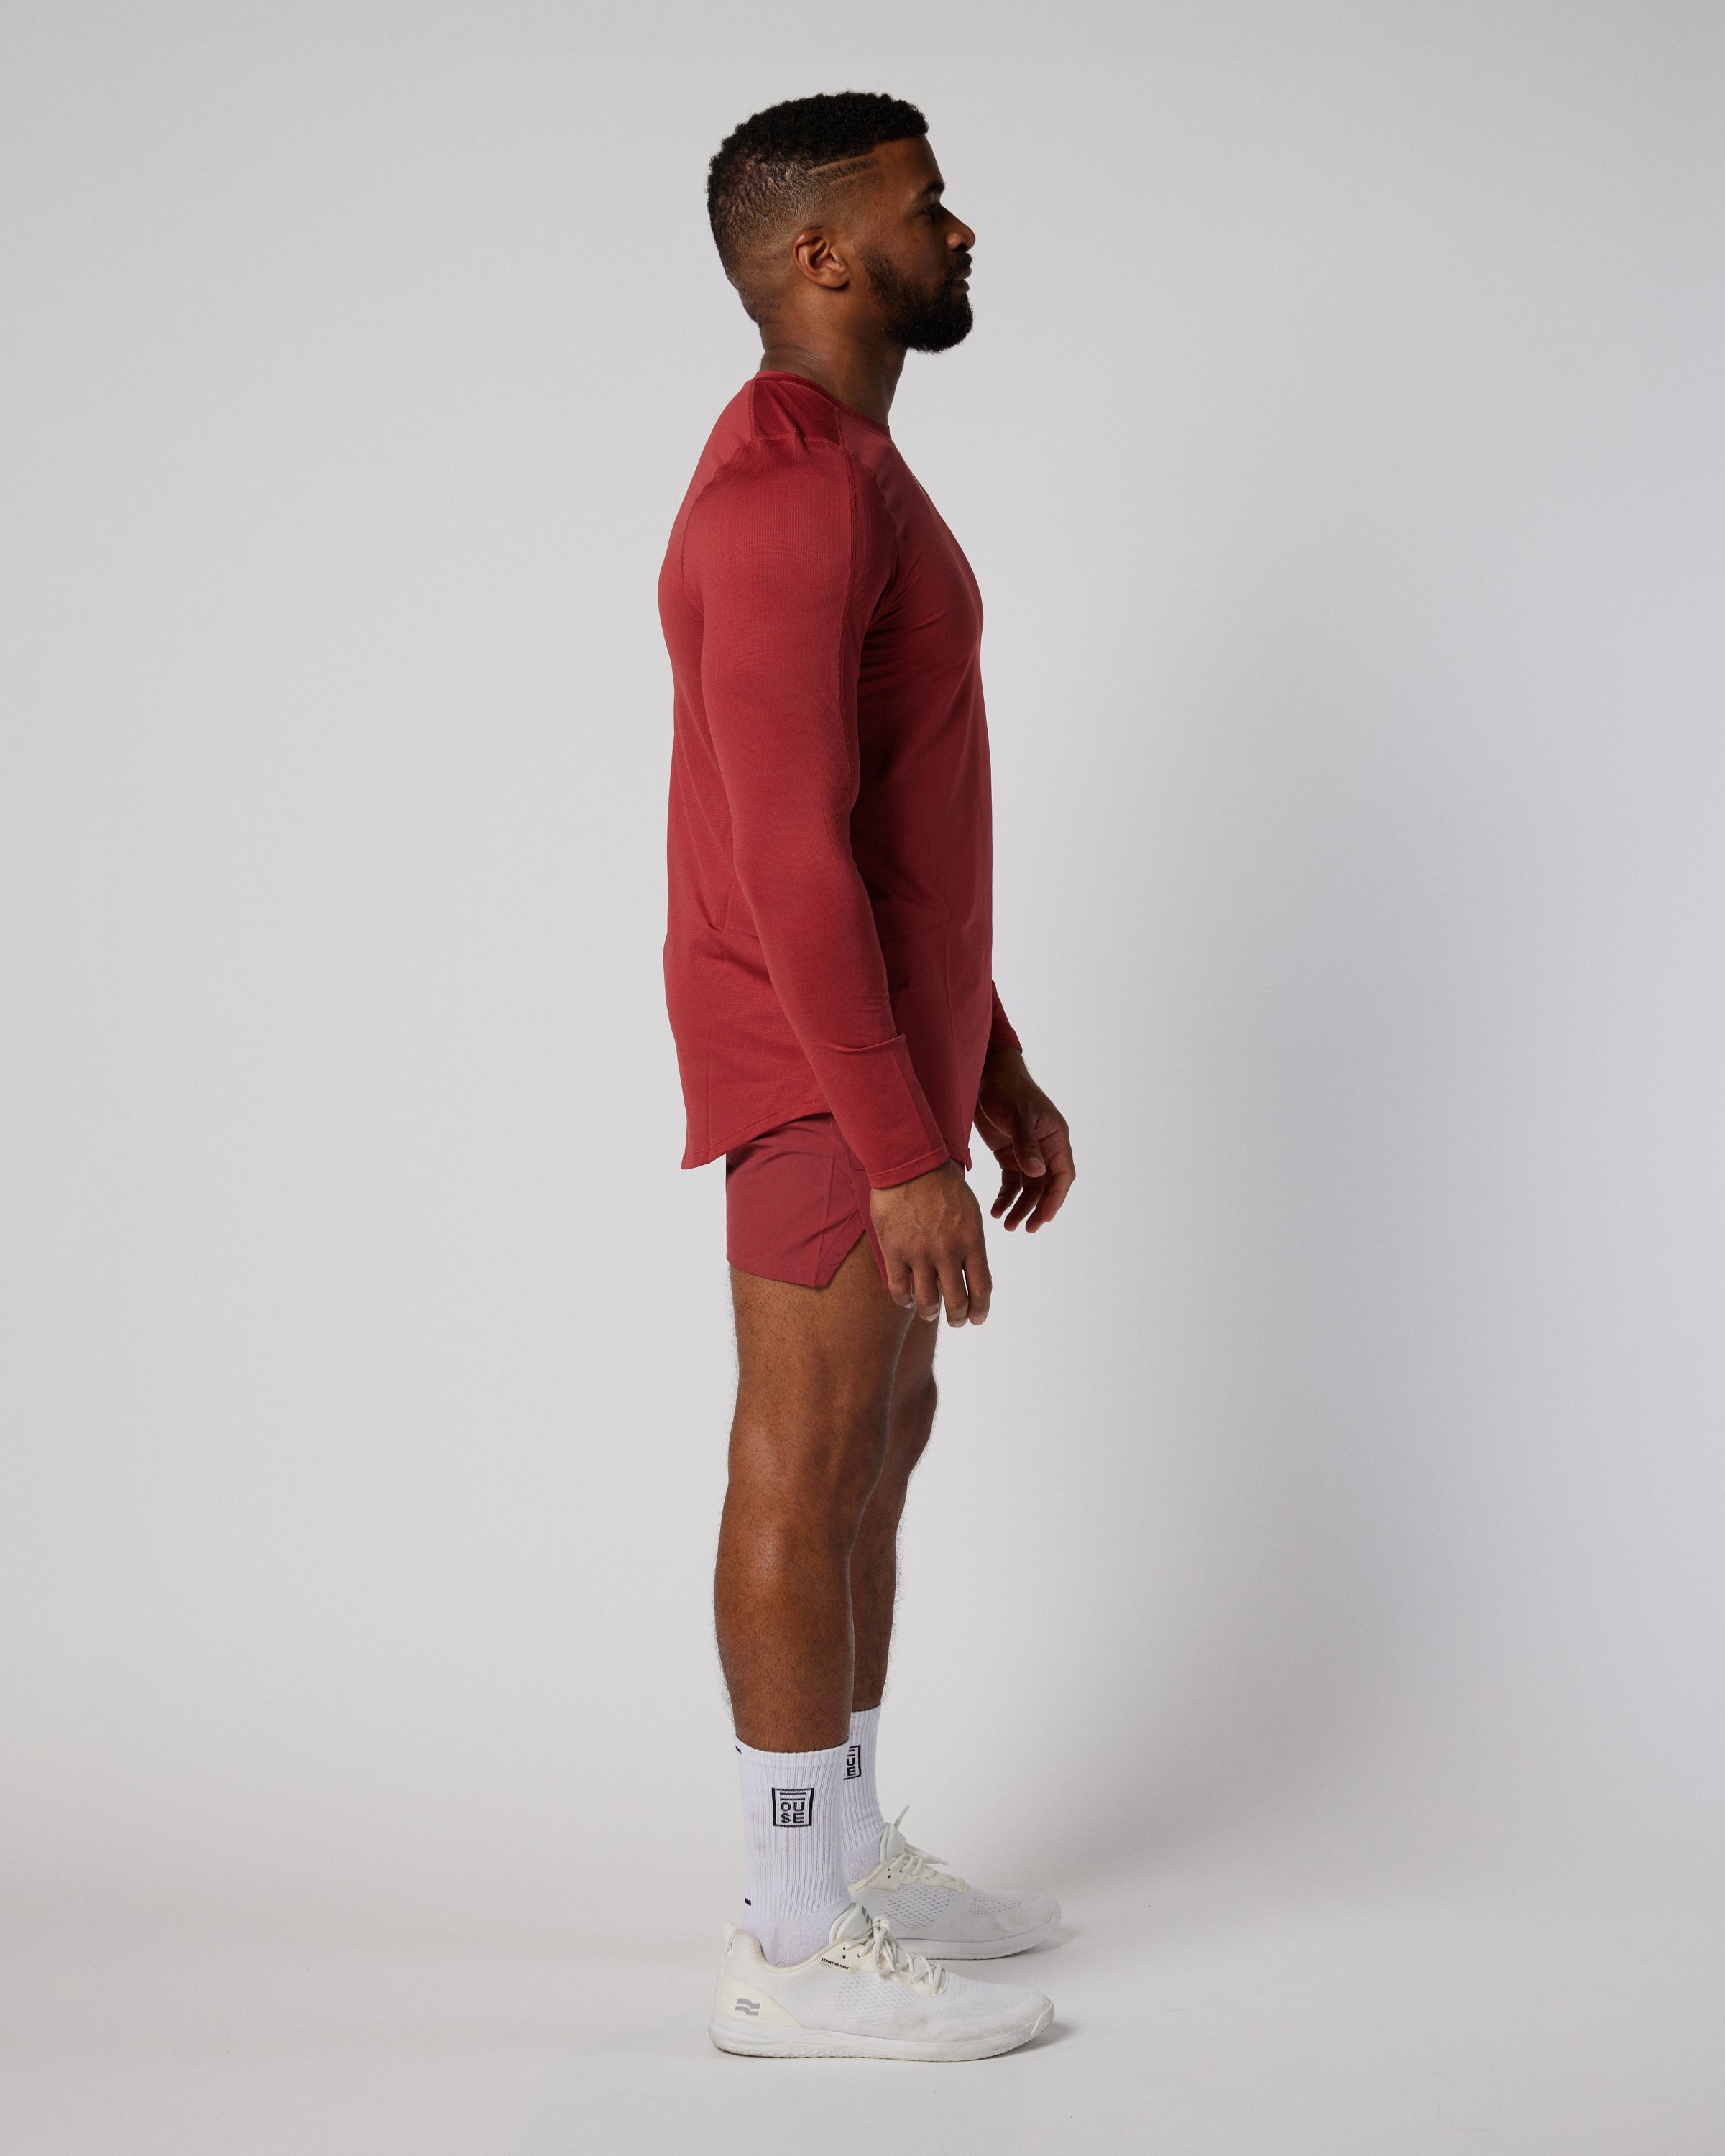 Mens athletic long sleeve top in mars red